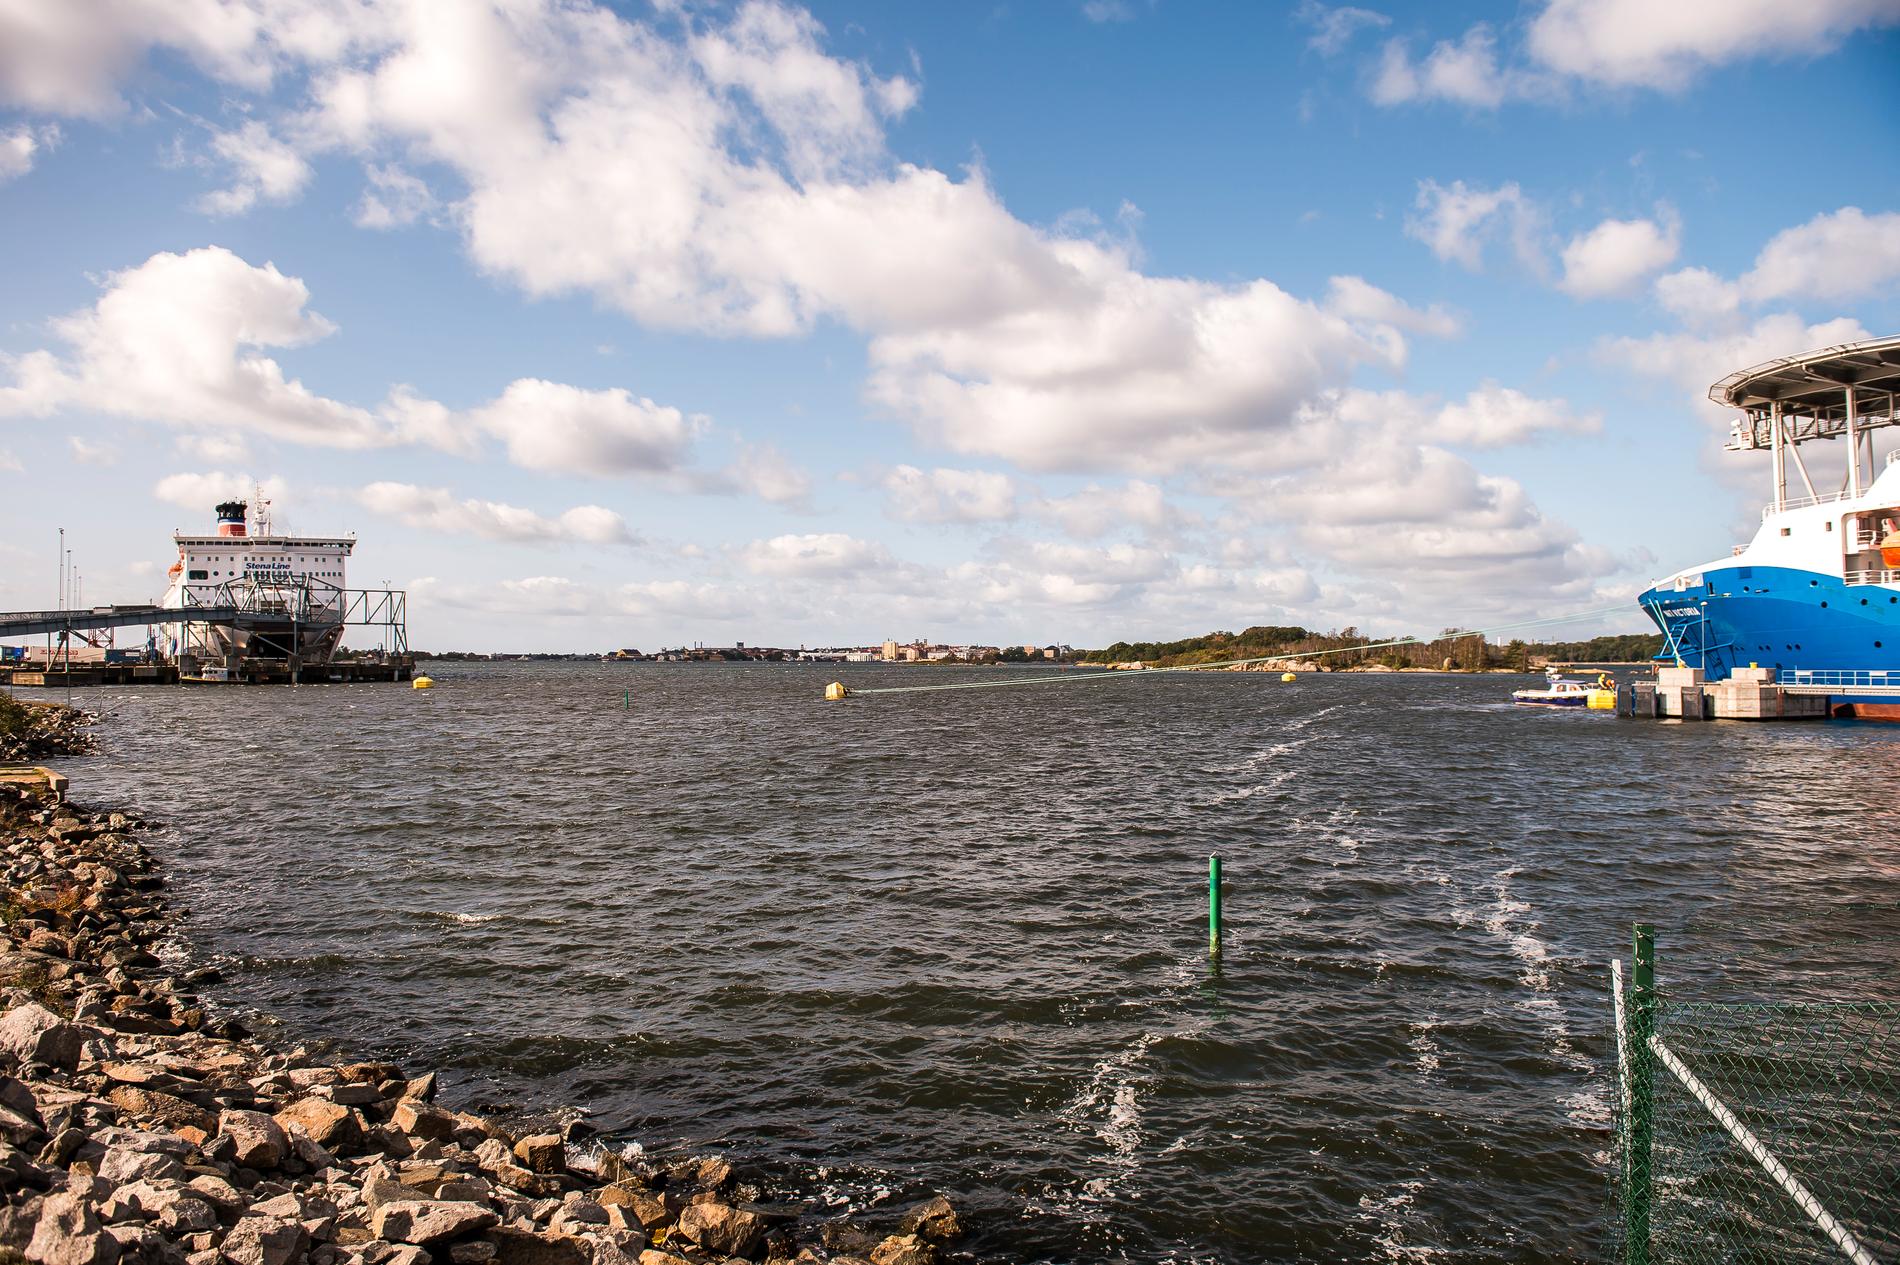 Uppgifterna om fartygsincidenten i Verköhamnen i Karlskrona går isär, enligt Kustbevakningen.